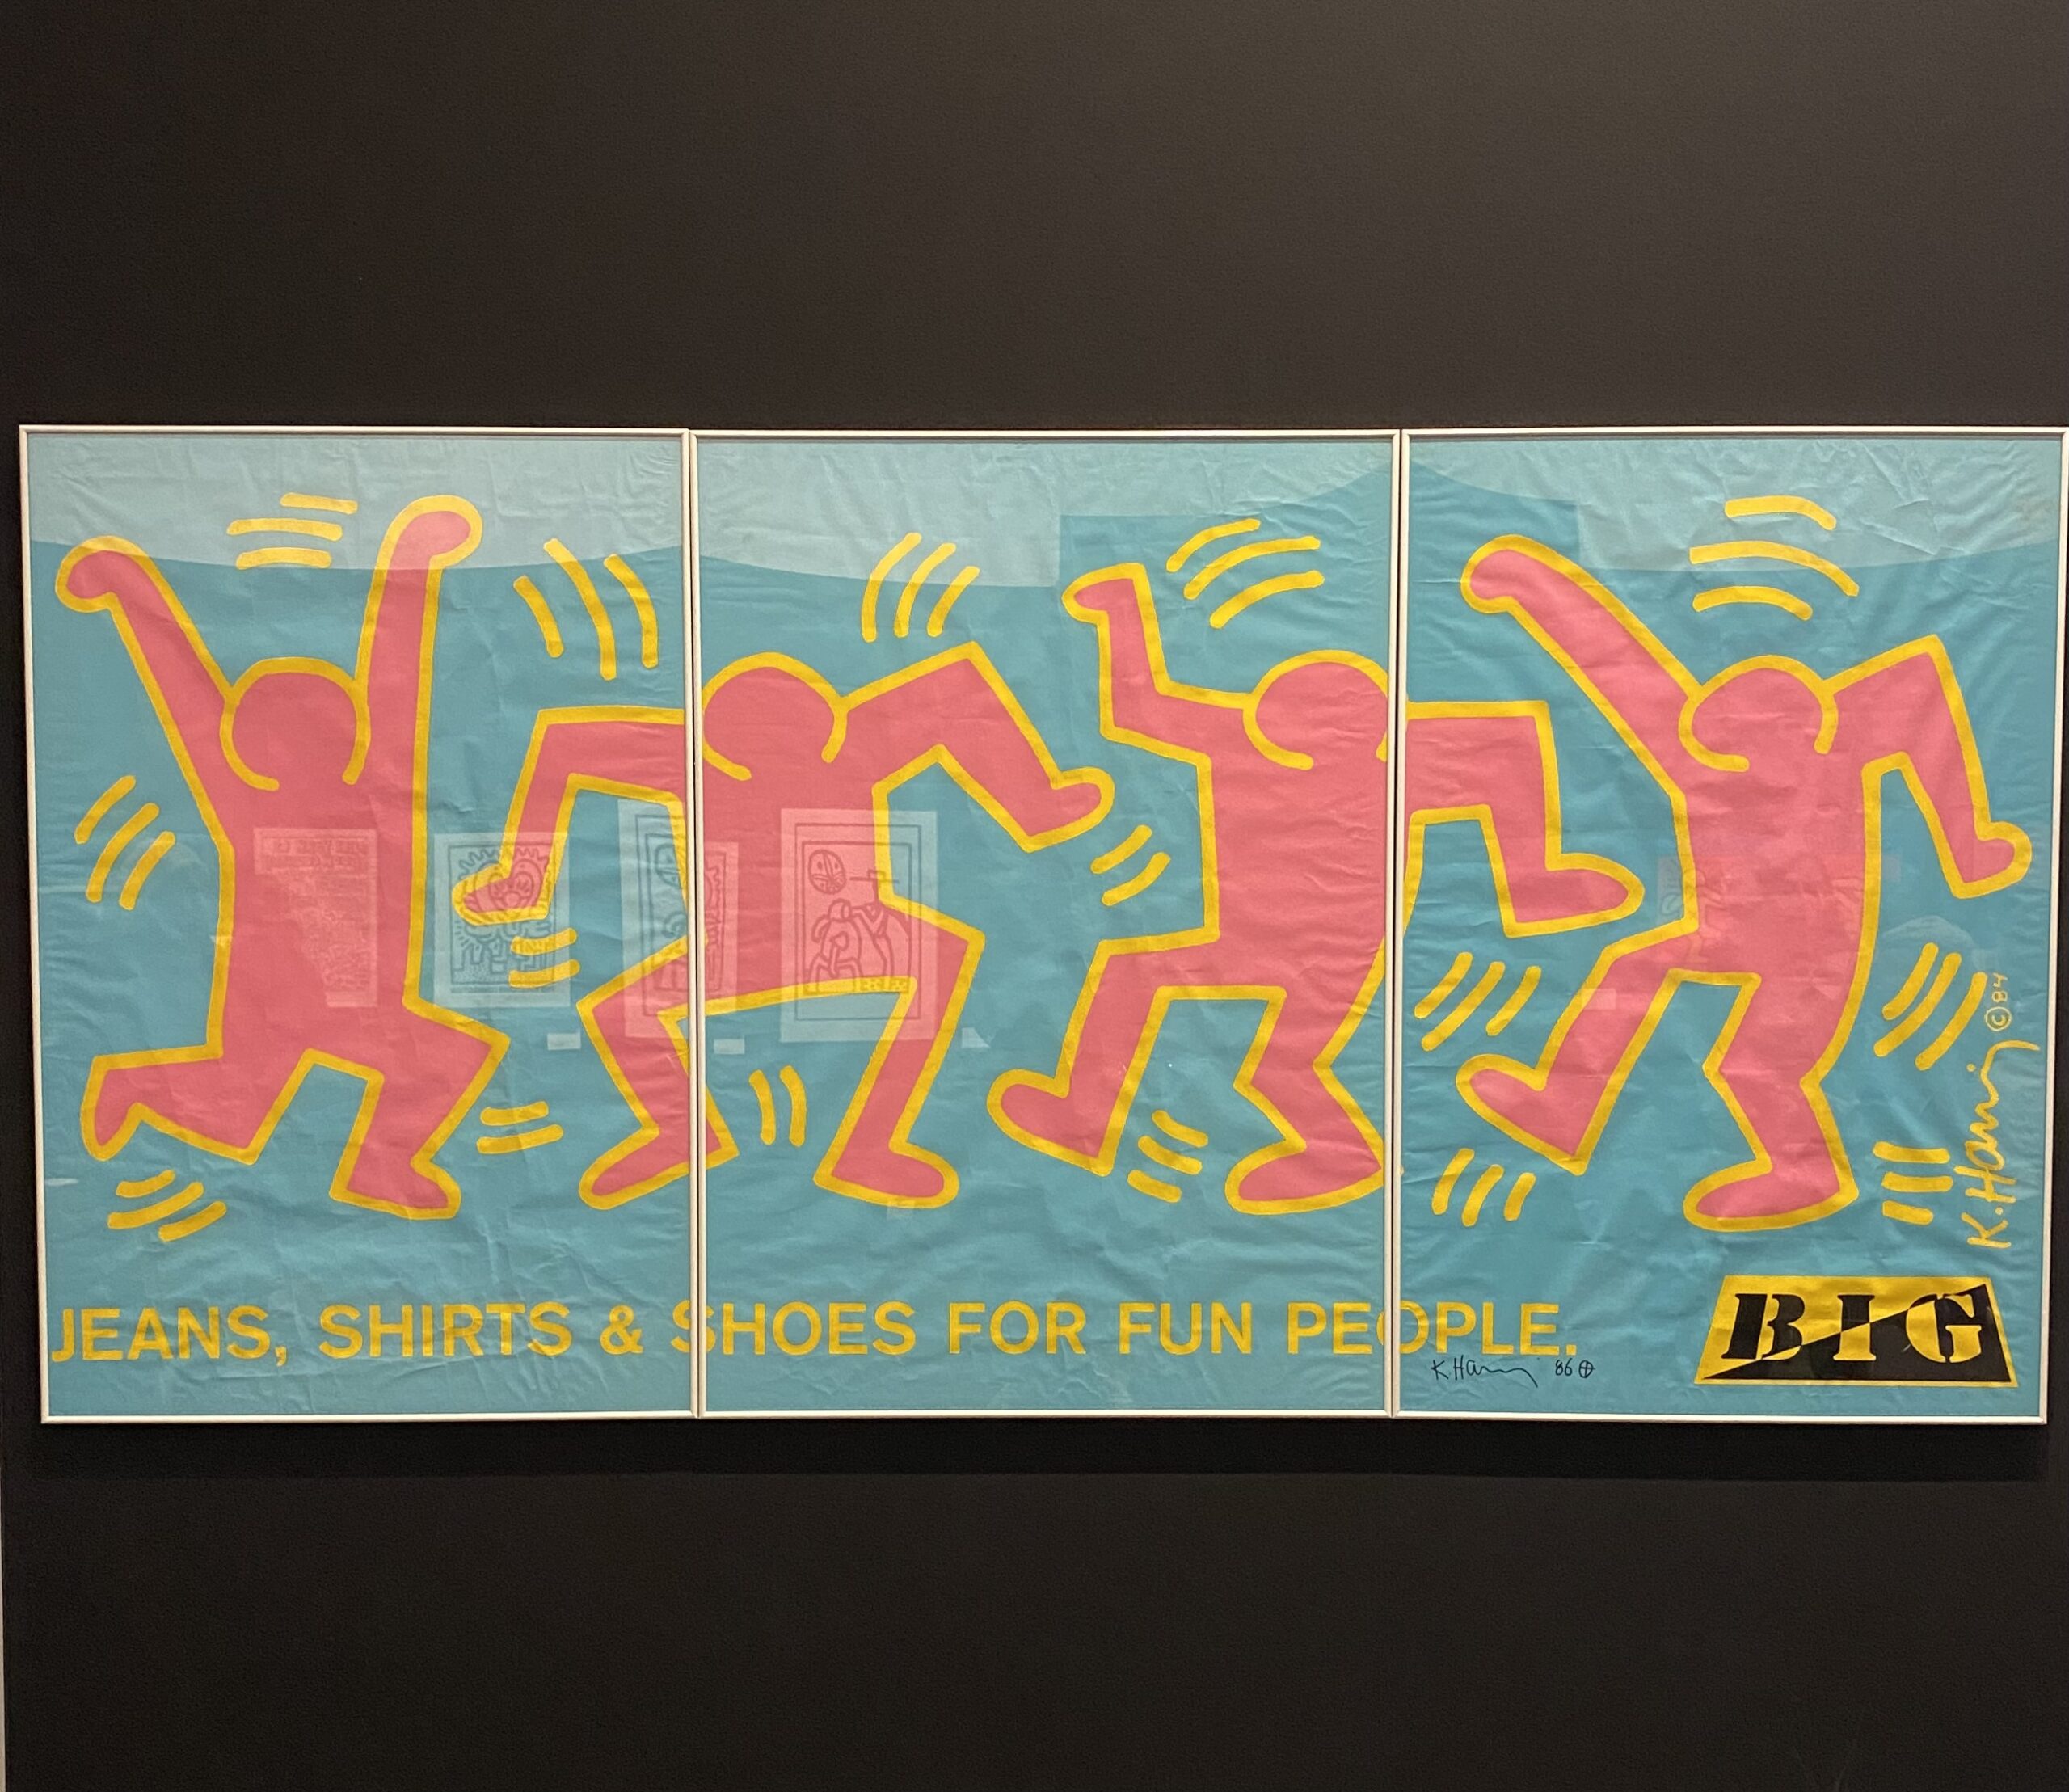 Mostra Keith Haring Monza